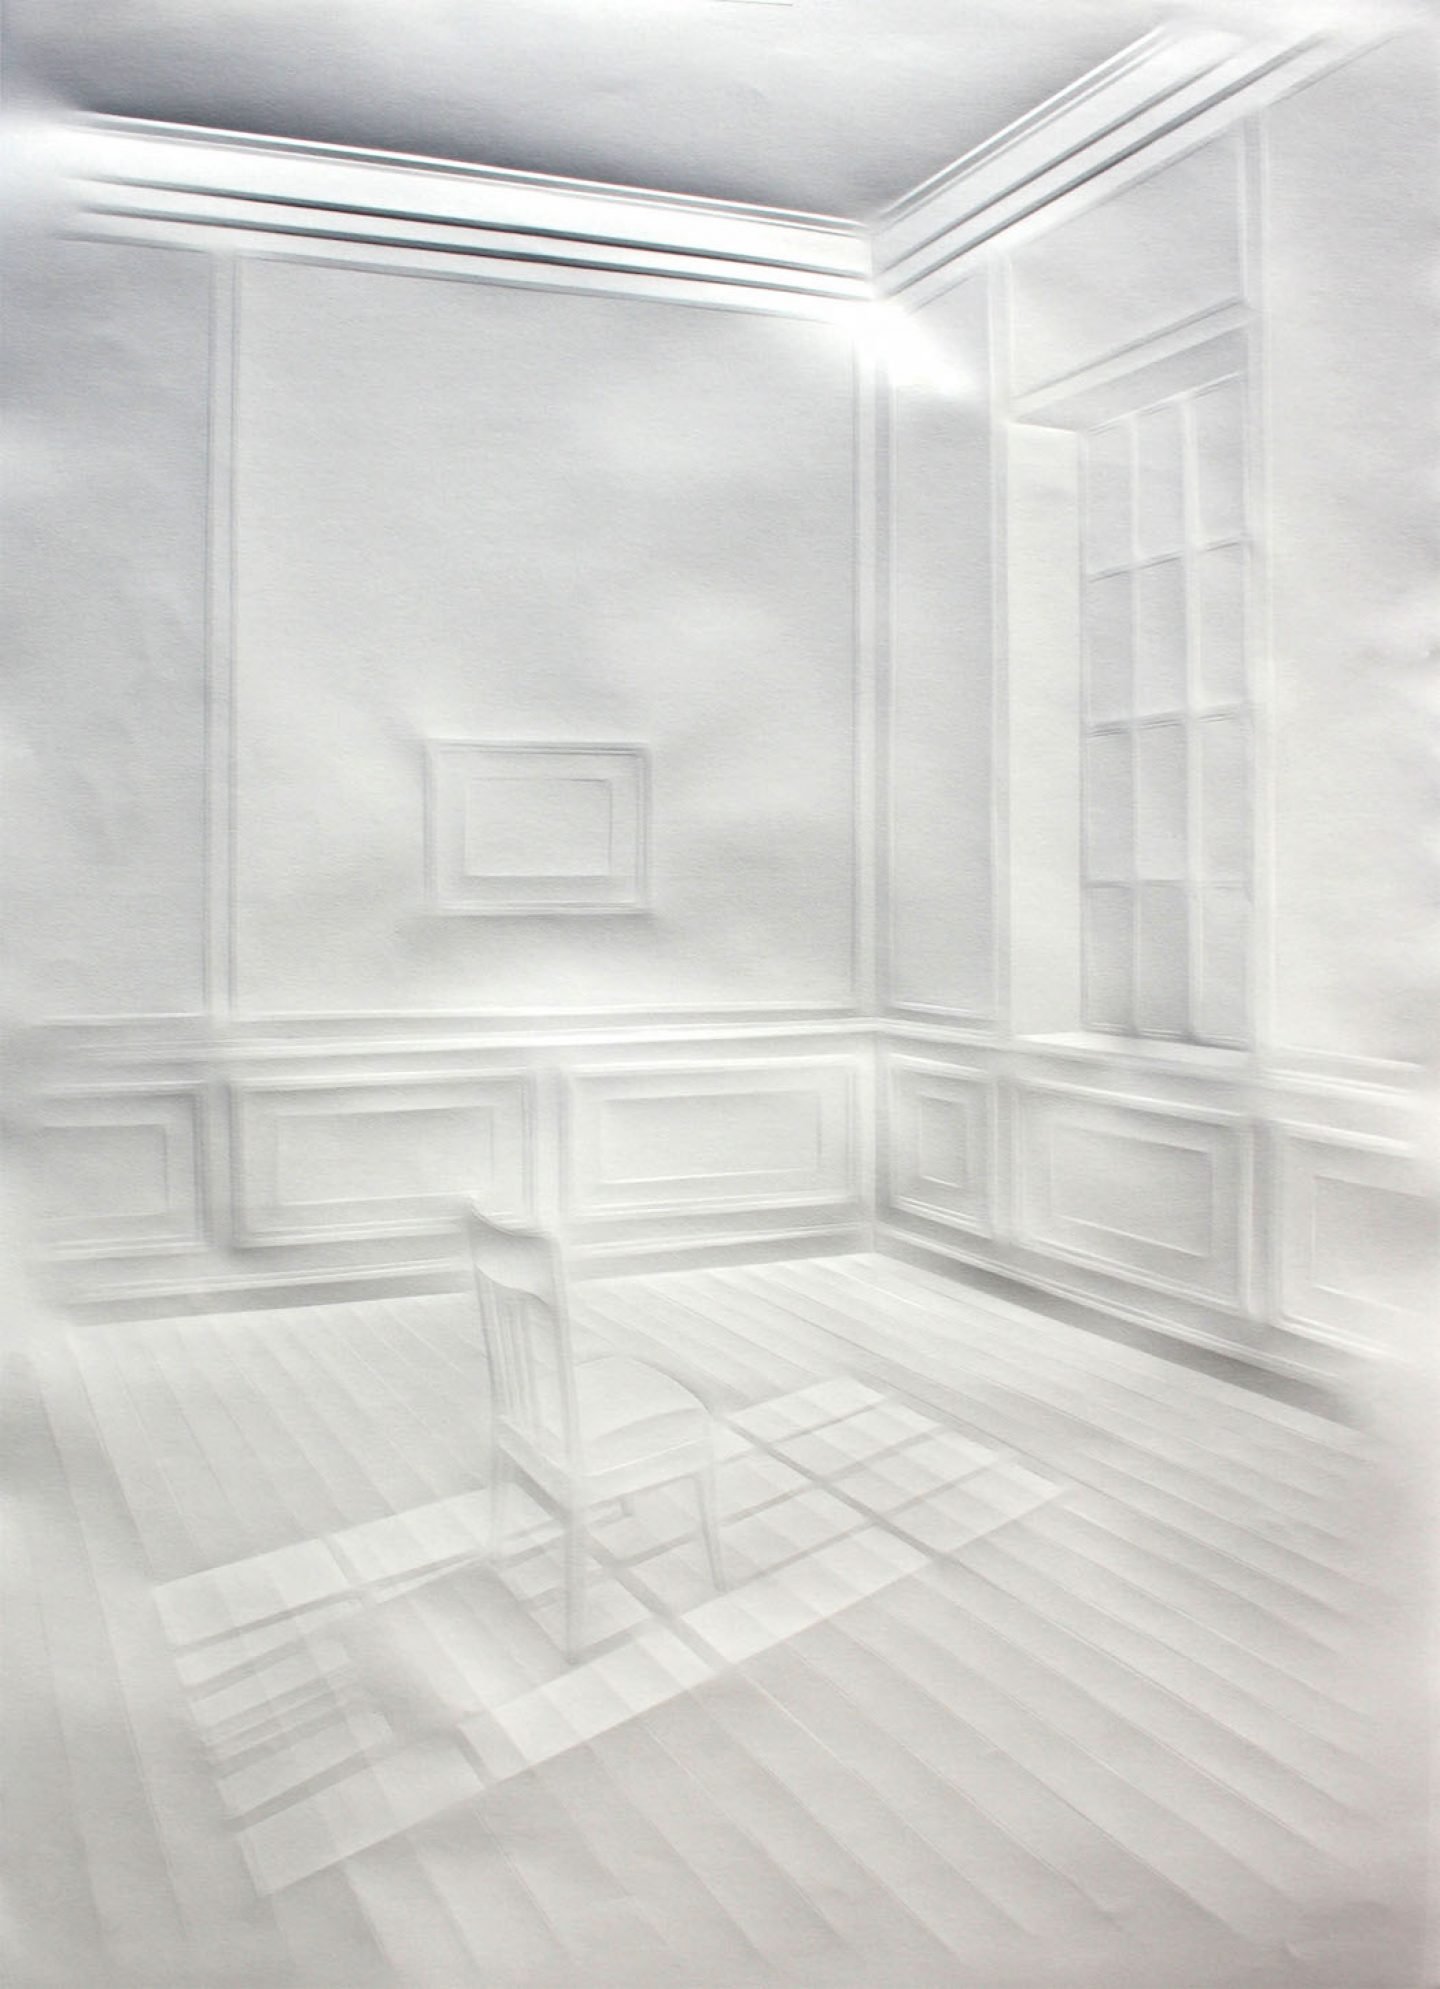 simonschubert(Light on chair),70x50cm,2014